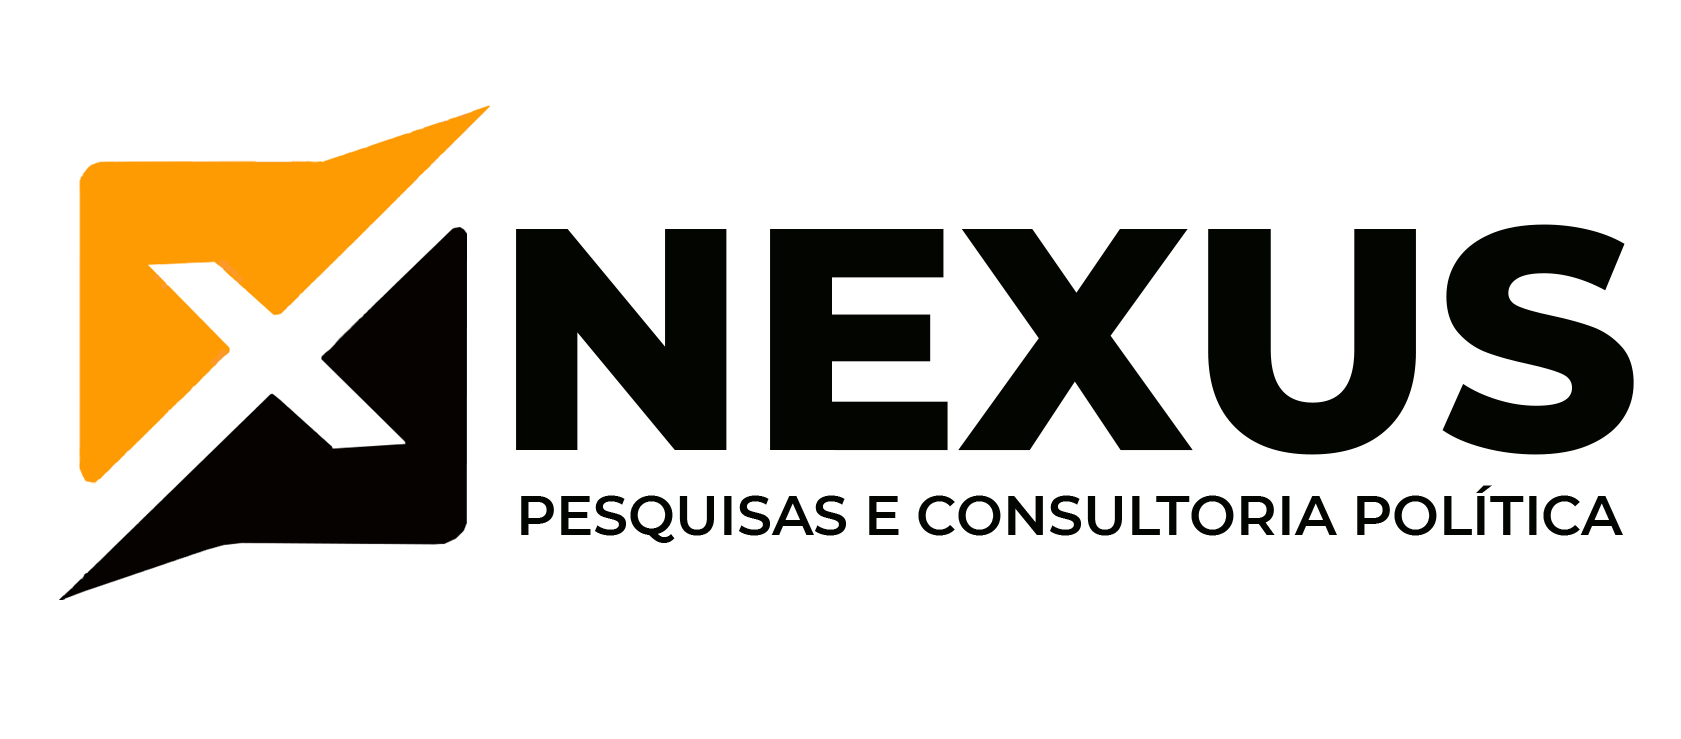 Nexus Consultoria - Atuação